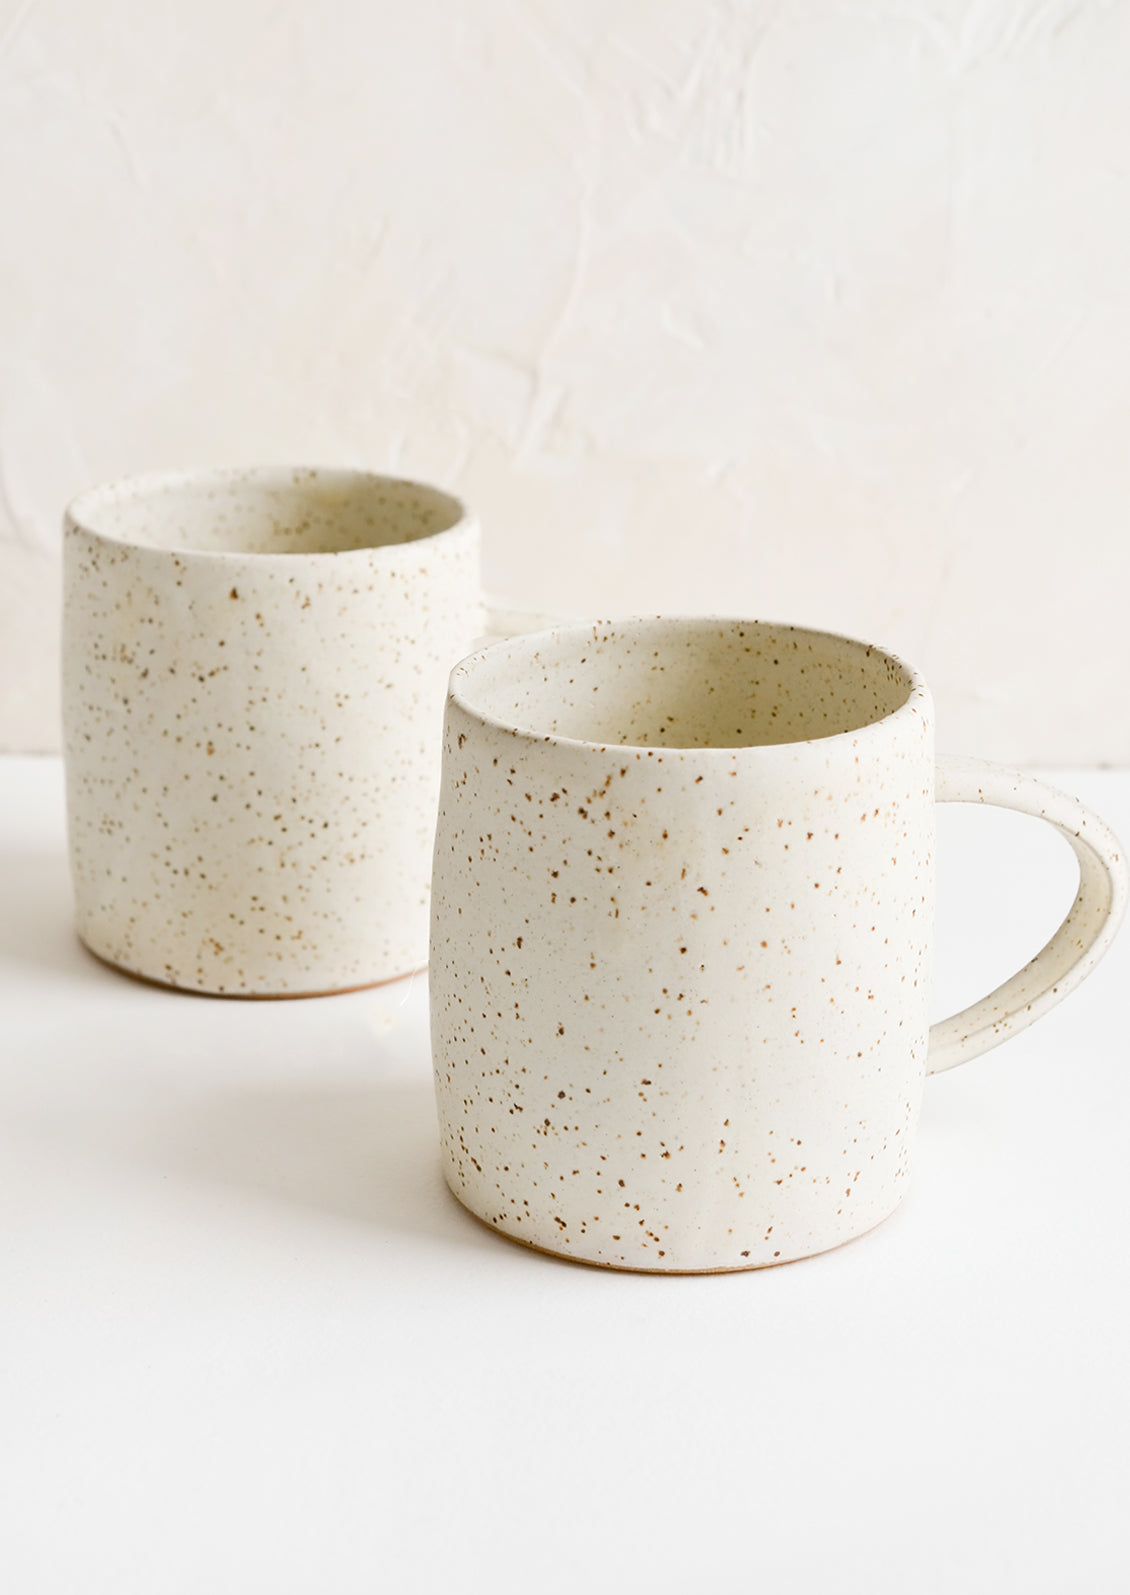 10 oz. Stoneware Mug, Cream Color Speckled - Cloz to Home